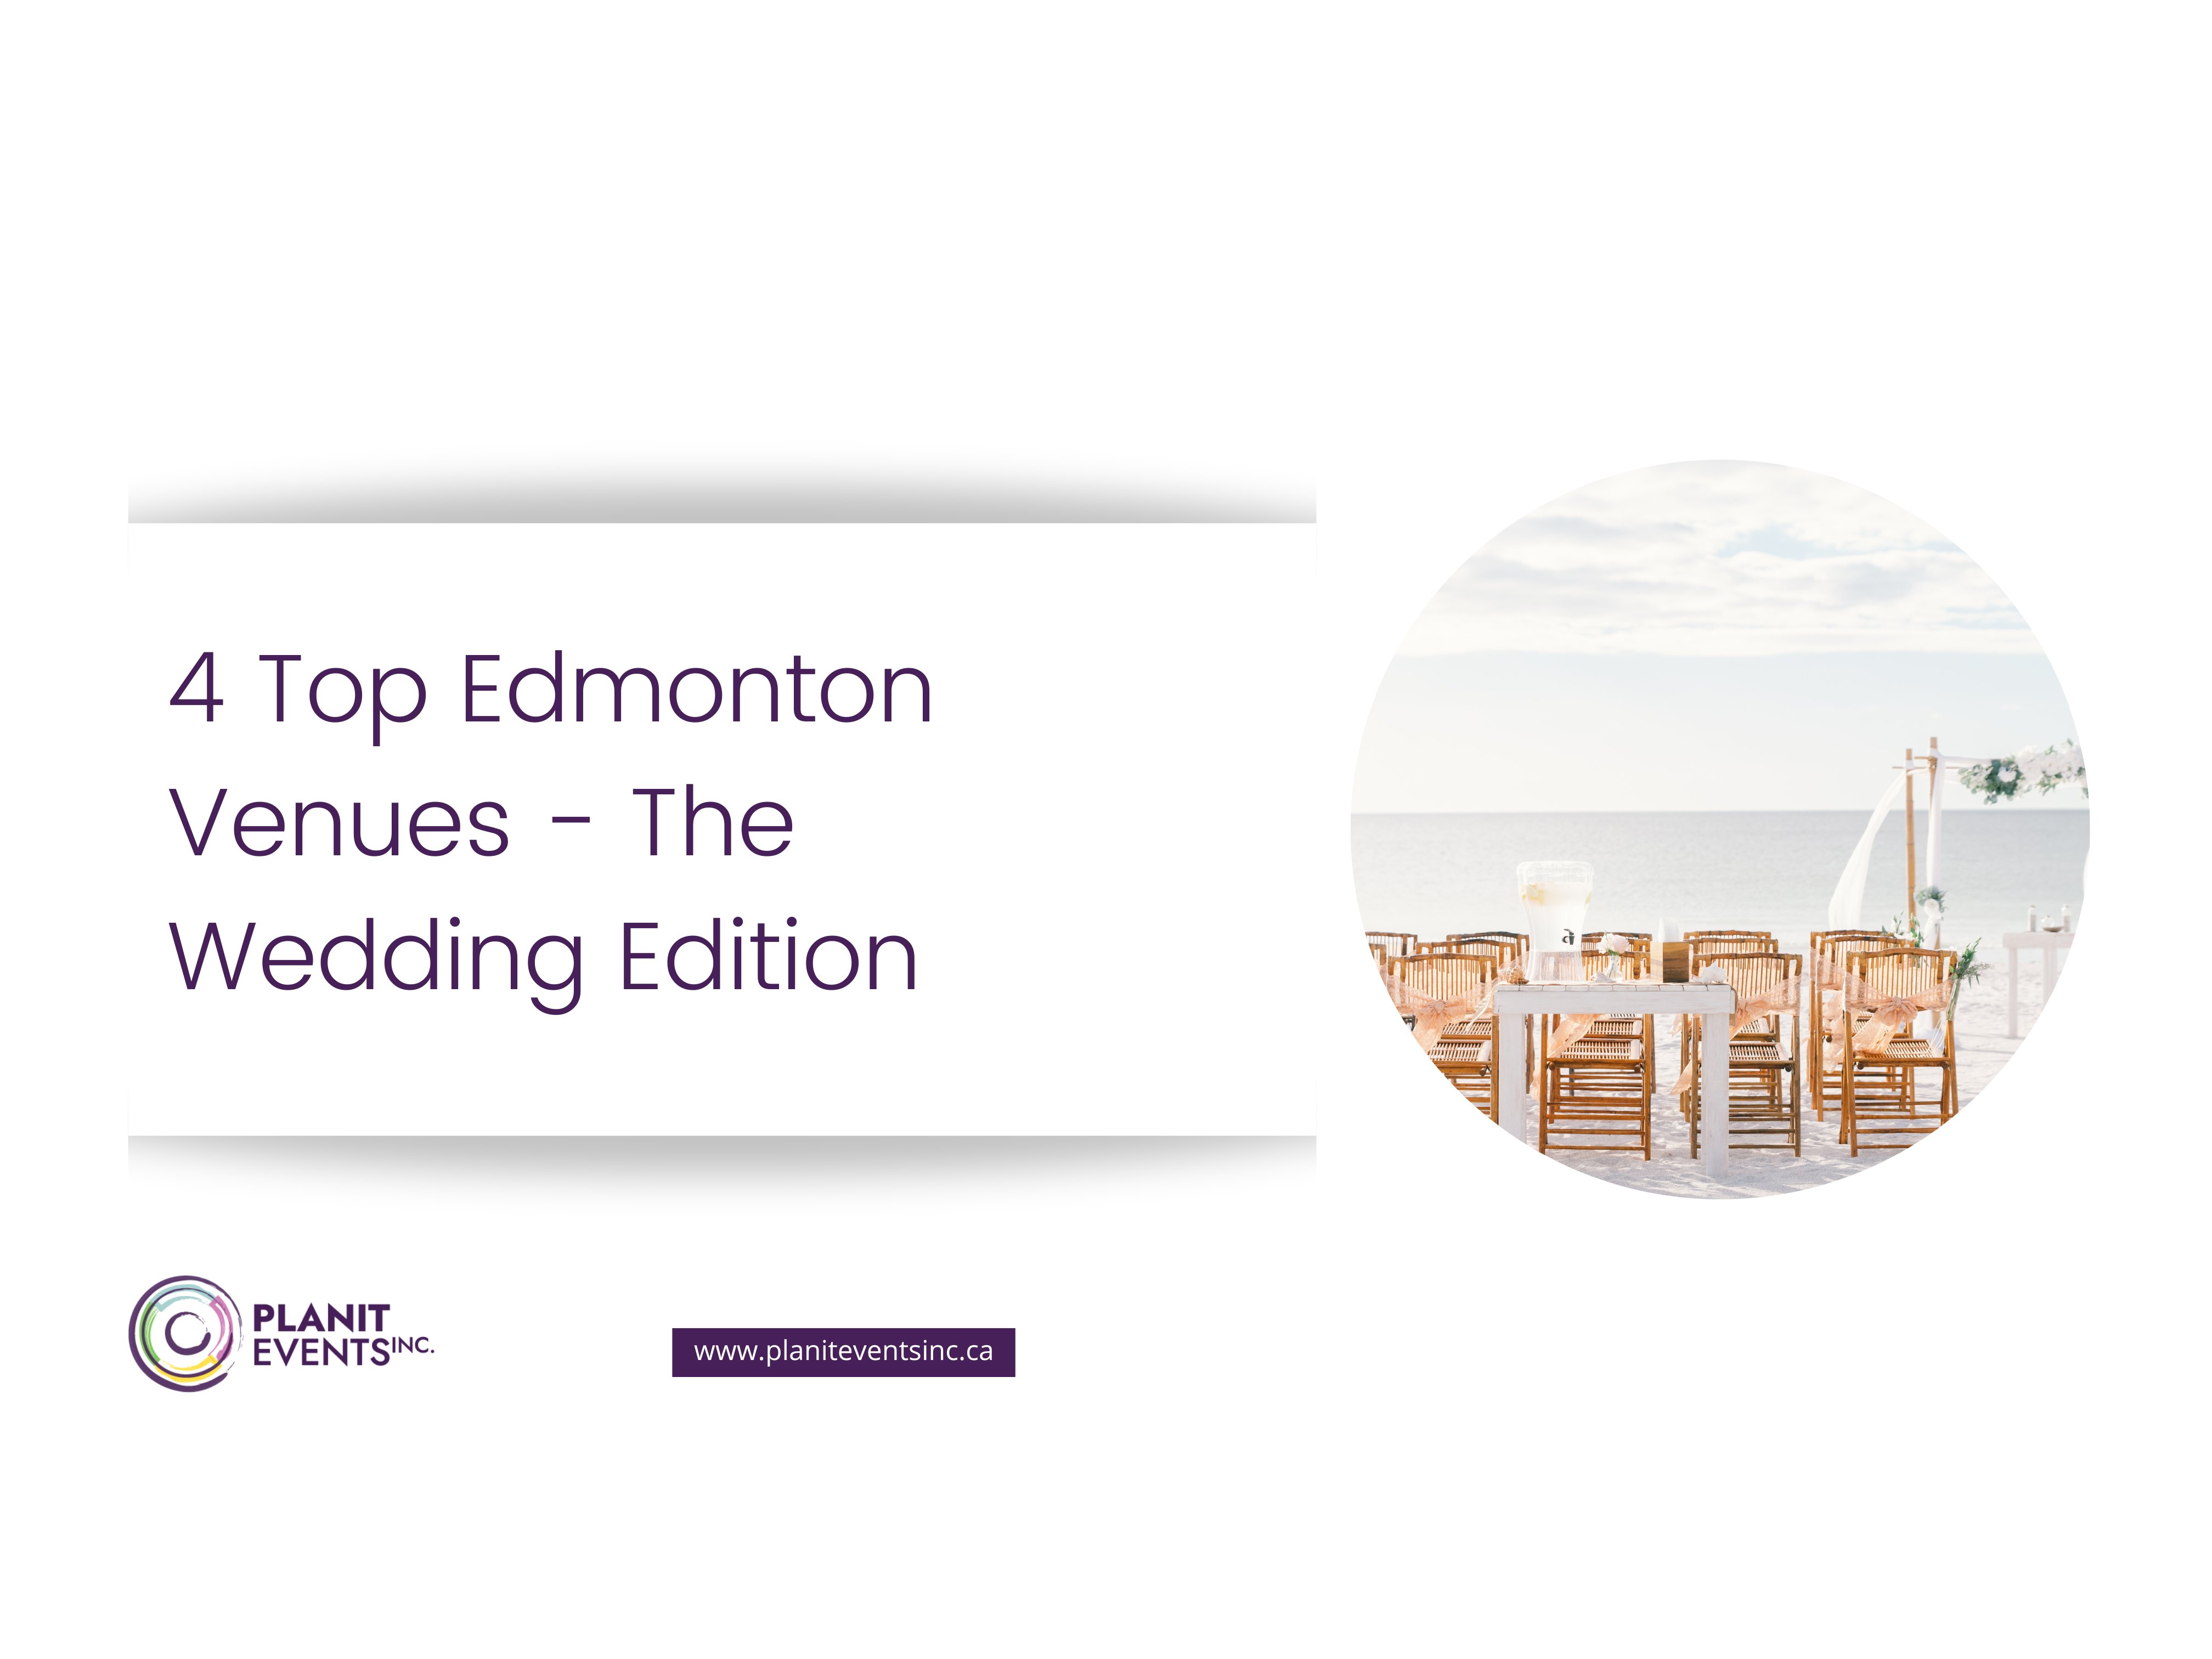 4 Top Edmonton Venues - The Wedding Edition